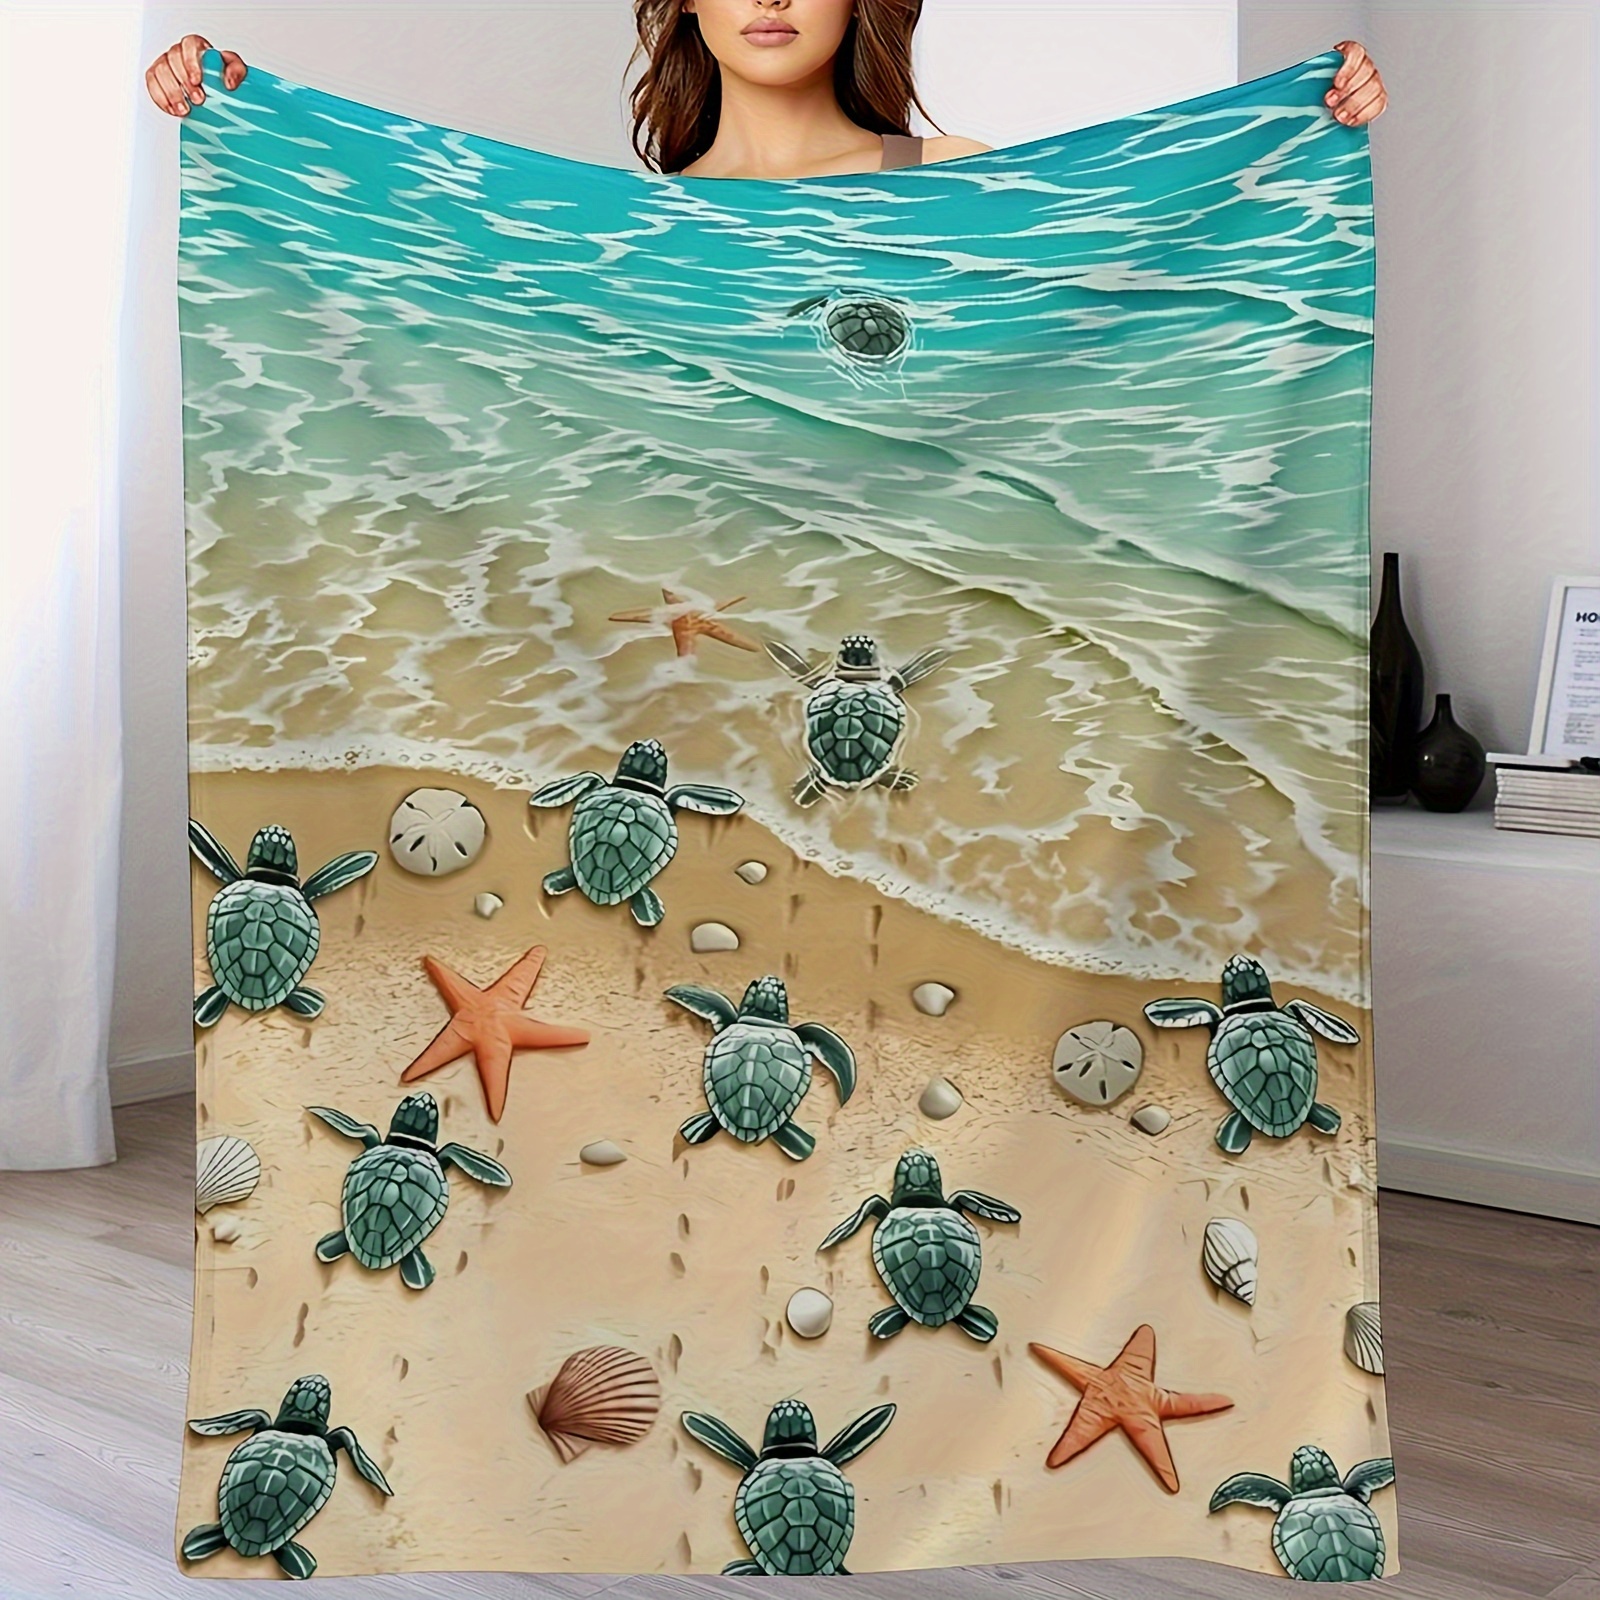 

Turtle Beach Fleece Blanket For Car, Bed, Turtle Fleece Throw Blanket For Women, Men - Super Soft Plush Beach Blanket Throw Fleece Turtle Ocean Blanket - Queen Size Blanket